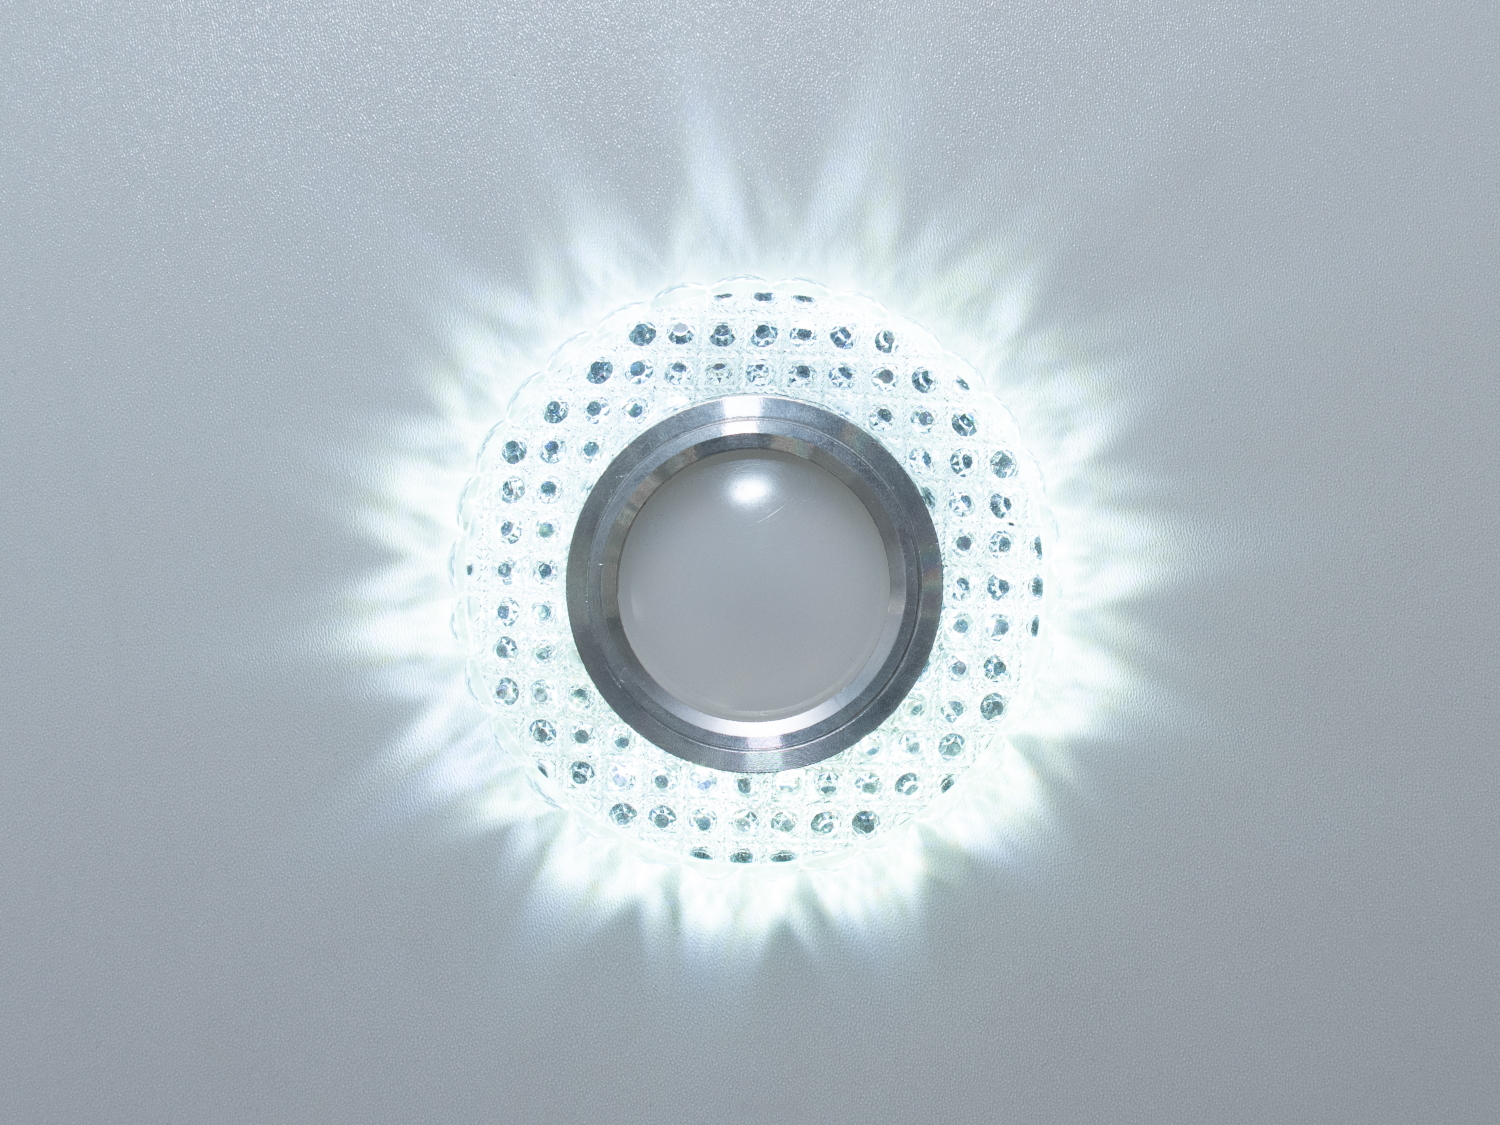 Зазвичай точкові світильники призначаються для підвісних стель і для підсвічування різних ніш або робочої поверхні. Конструктивно точковий світильник складається з двох частин: видимої - декоративної та вбудованої - функціональною. Функціональна частина світильників складається з каркаса, куди вставляється джерело світла та кріпиться декоративна частина, а також затискачів, які призначені для кріплення світильника до стелі. Різноманітність декоративної частини точкових світильників дозволяє зробити Ваш інтер'єр неповторним. Головні якості сучасних точкових світильників - це рівномірне освітлення всього приміщення з можливістю акцентування необхідних деталей інтер'єру. 
Для оптових покупців відпускається лише ящиками по 50 шт. 
Лампа і трансформатор в комплект не входять.